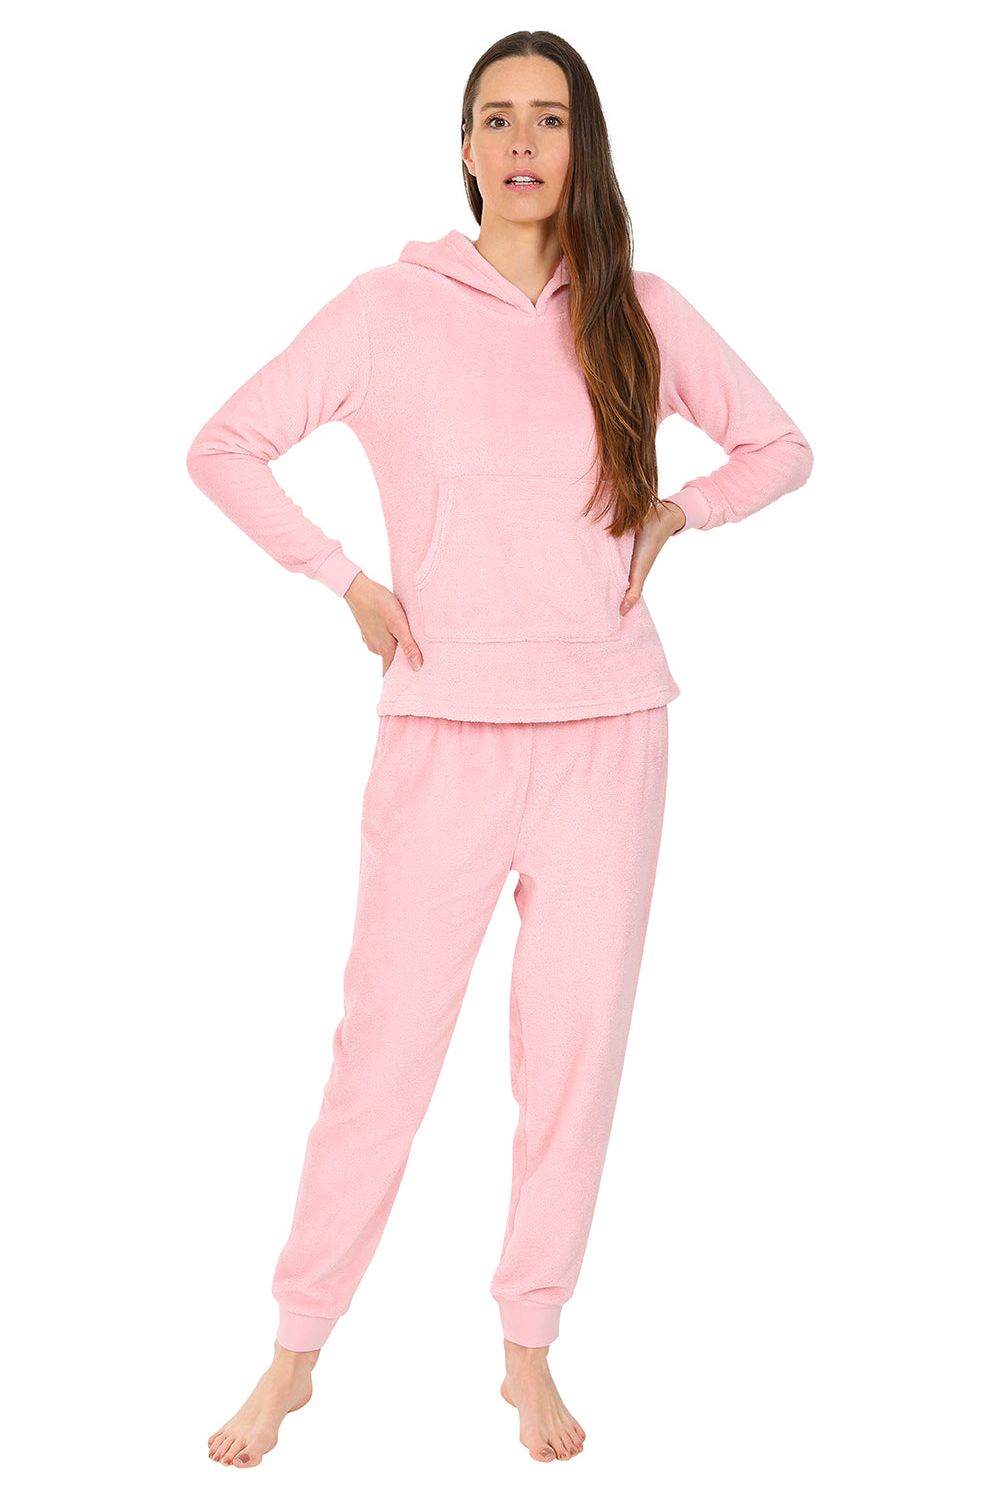 Girls Pink Fleece Hooded Lounge Pyjama Set